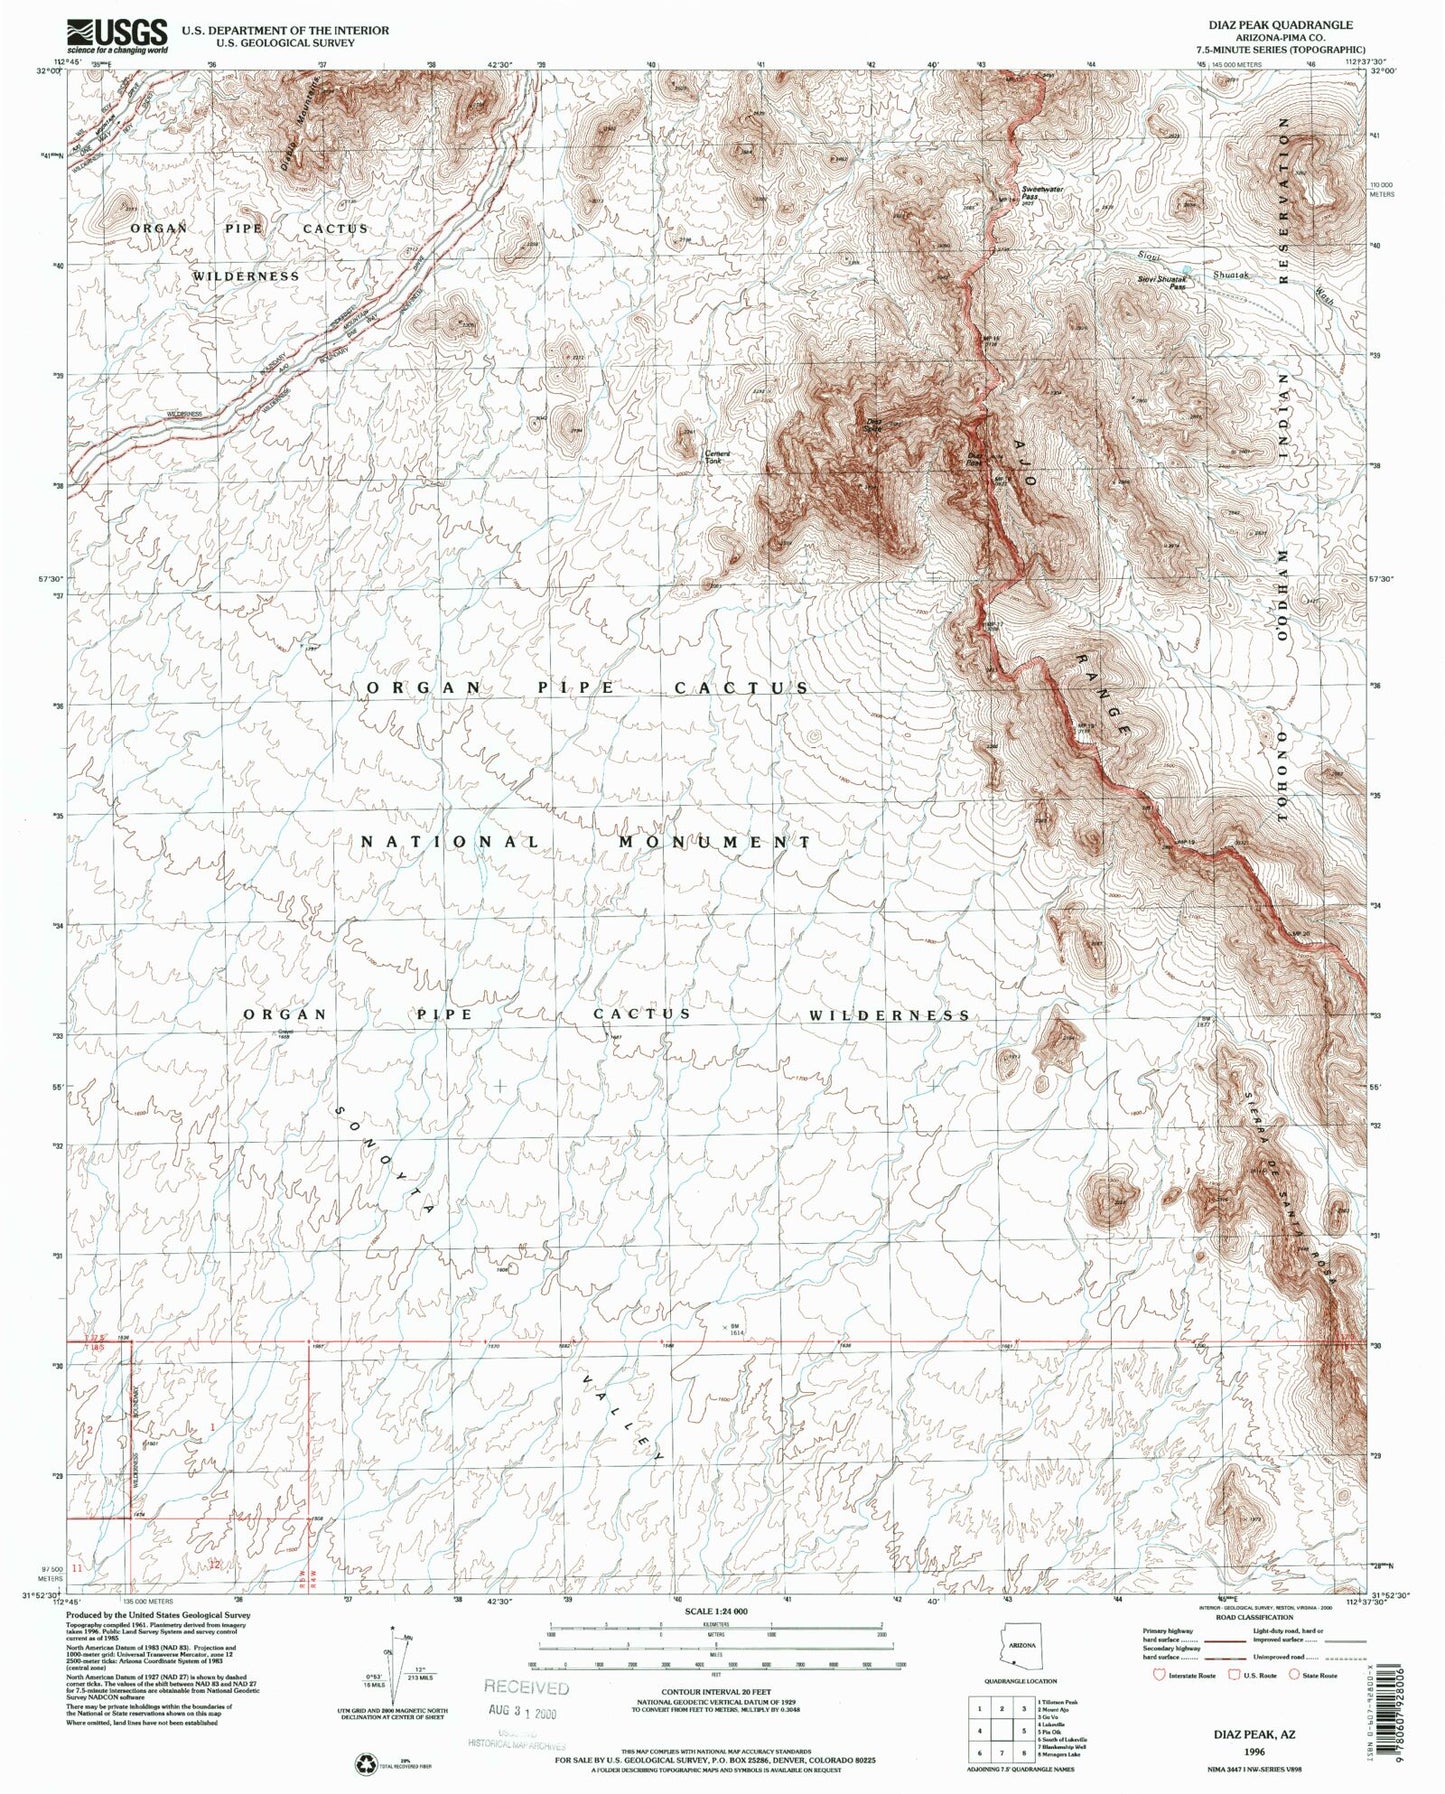 Classic USGS Diaz Peak Arizona 7.5'x7.5' Topo Map Image